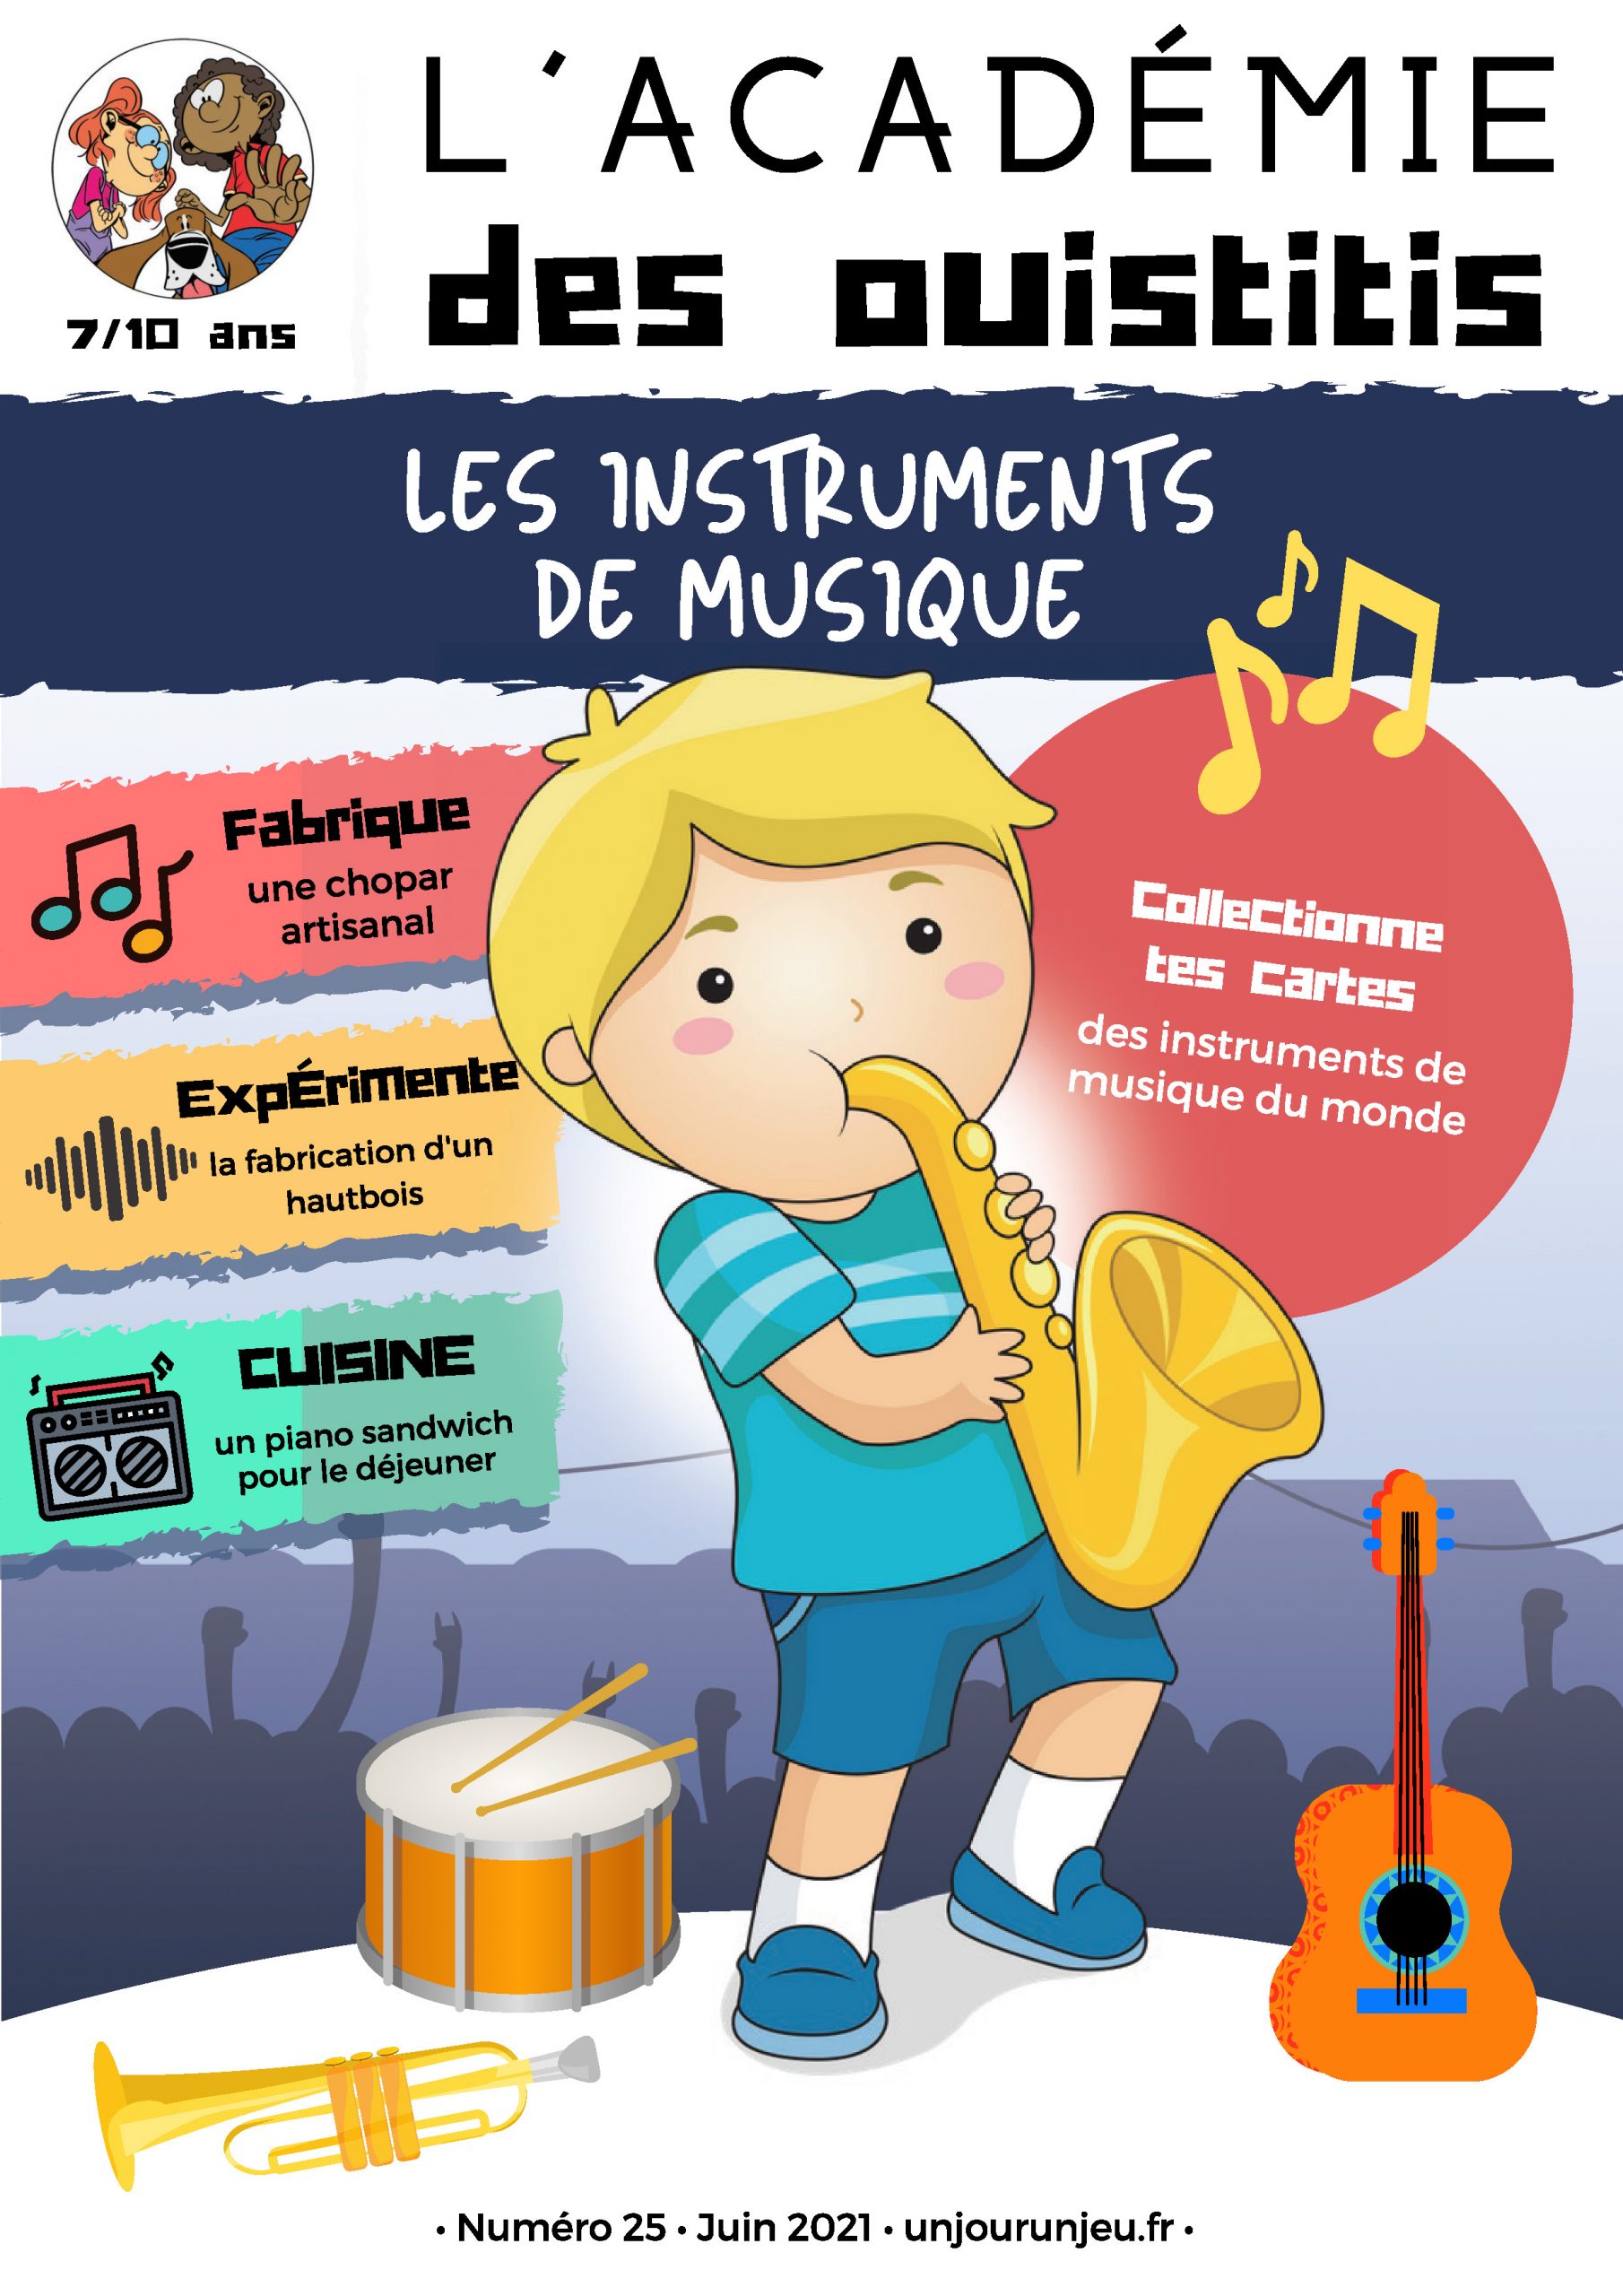 L’Académie des ouistitis en musique !